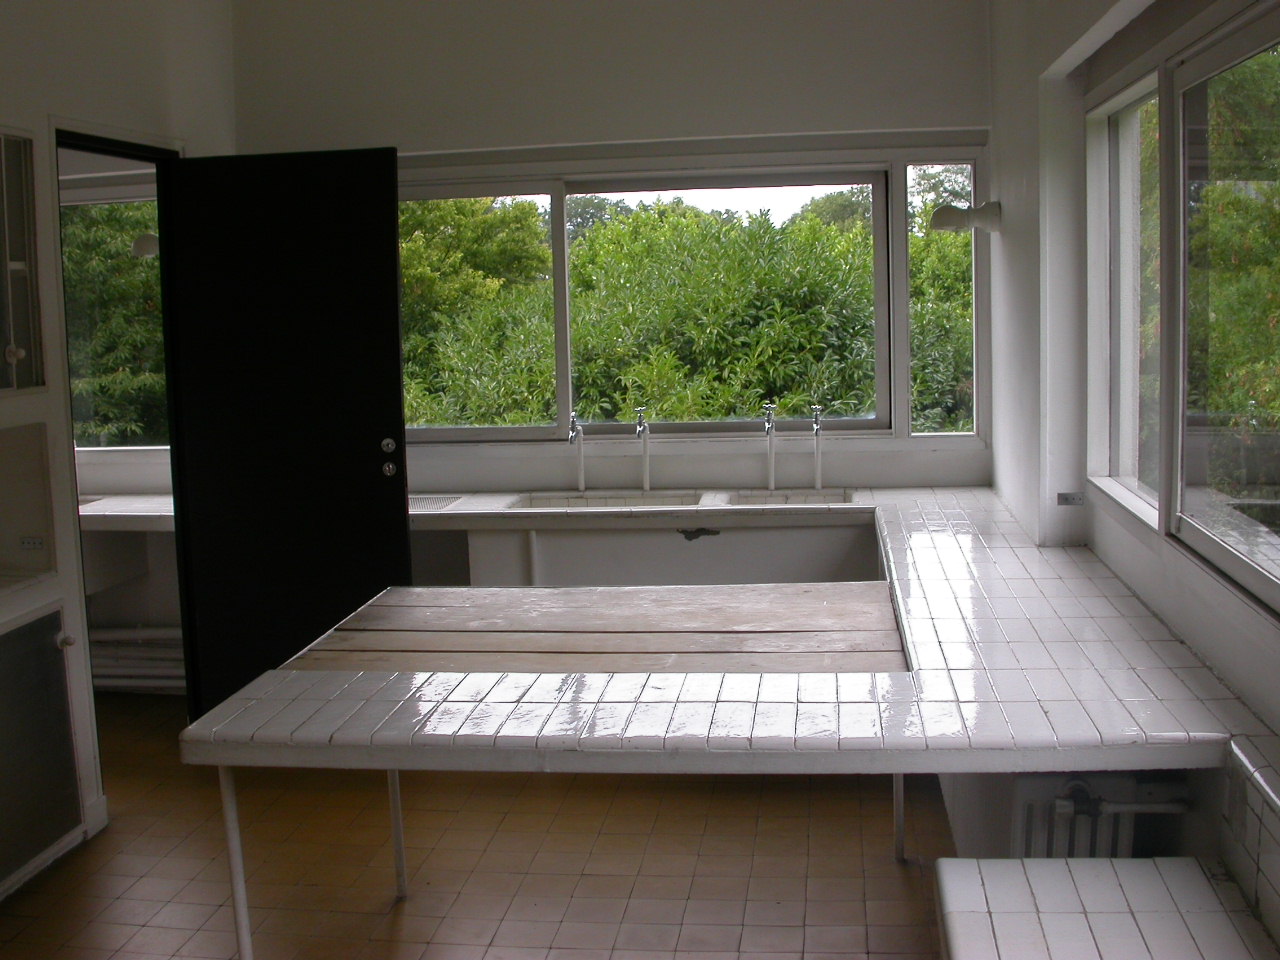 Villa Savoye, Le Corbusier